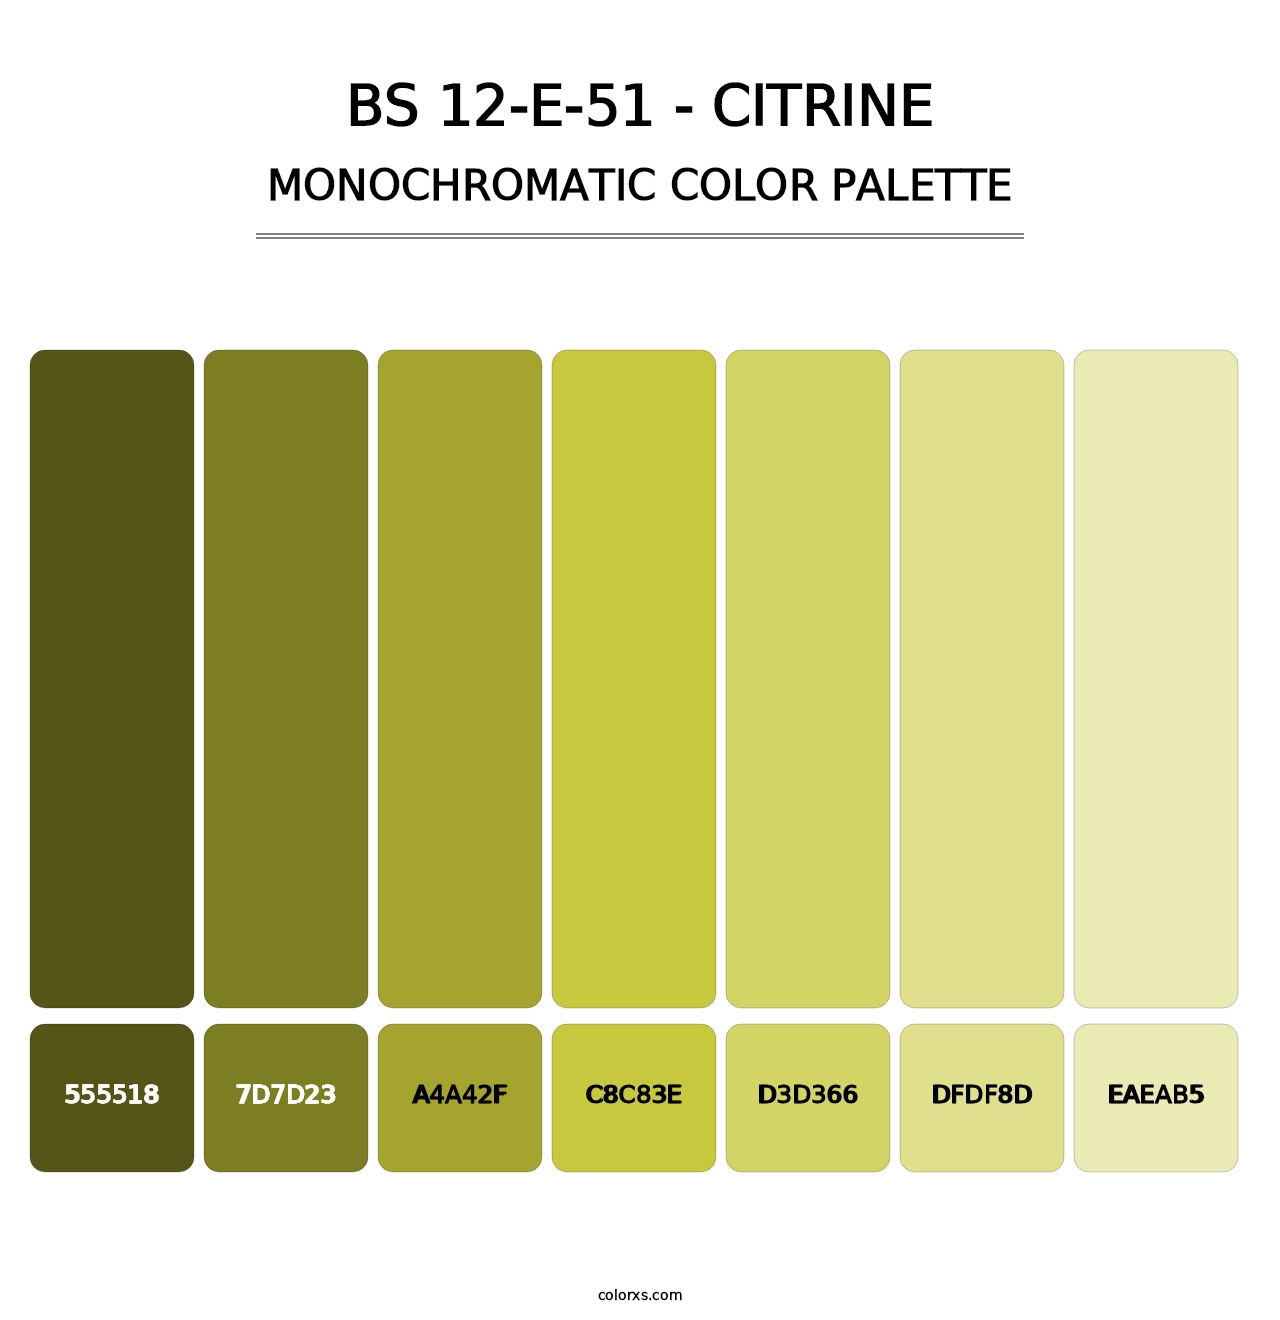 BS 12-E-51 - Citrine - Monochromatic Color Palette